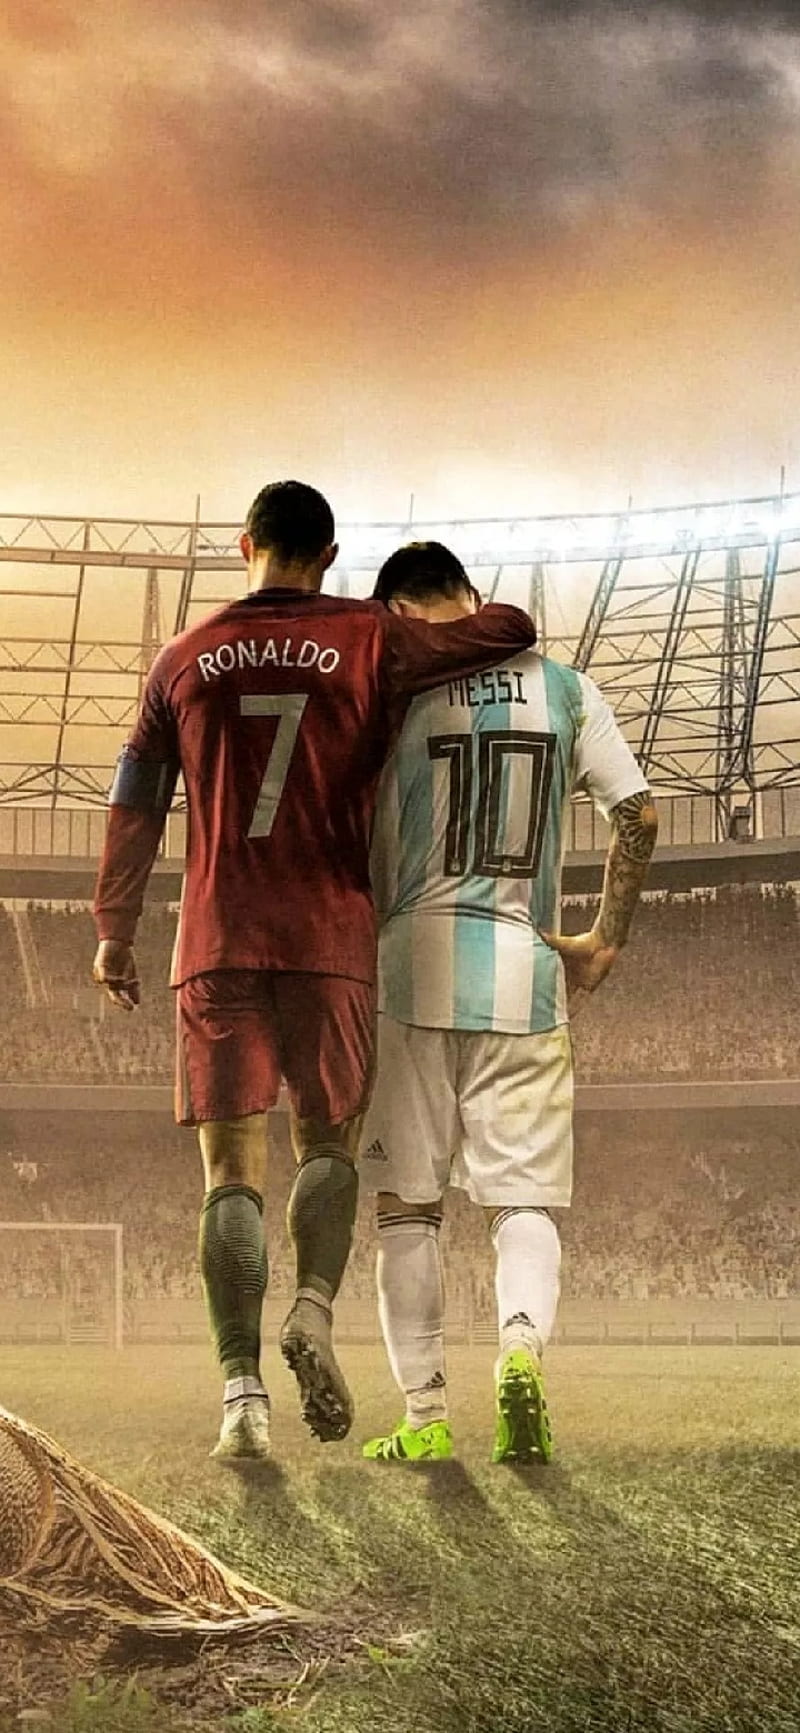 CR7 Y Messi: CR7 và Messi là hai tay săn bàn cùng đỉnh cao của bóng đá thế giới. Hãy xem họ so tài trong những trận đấu kinh điển và tìm ra ai là ngôi sao xuất sắc hơn.